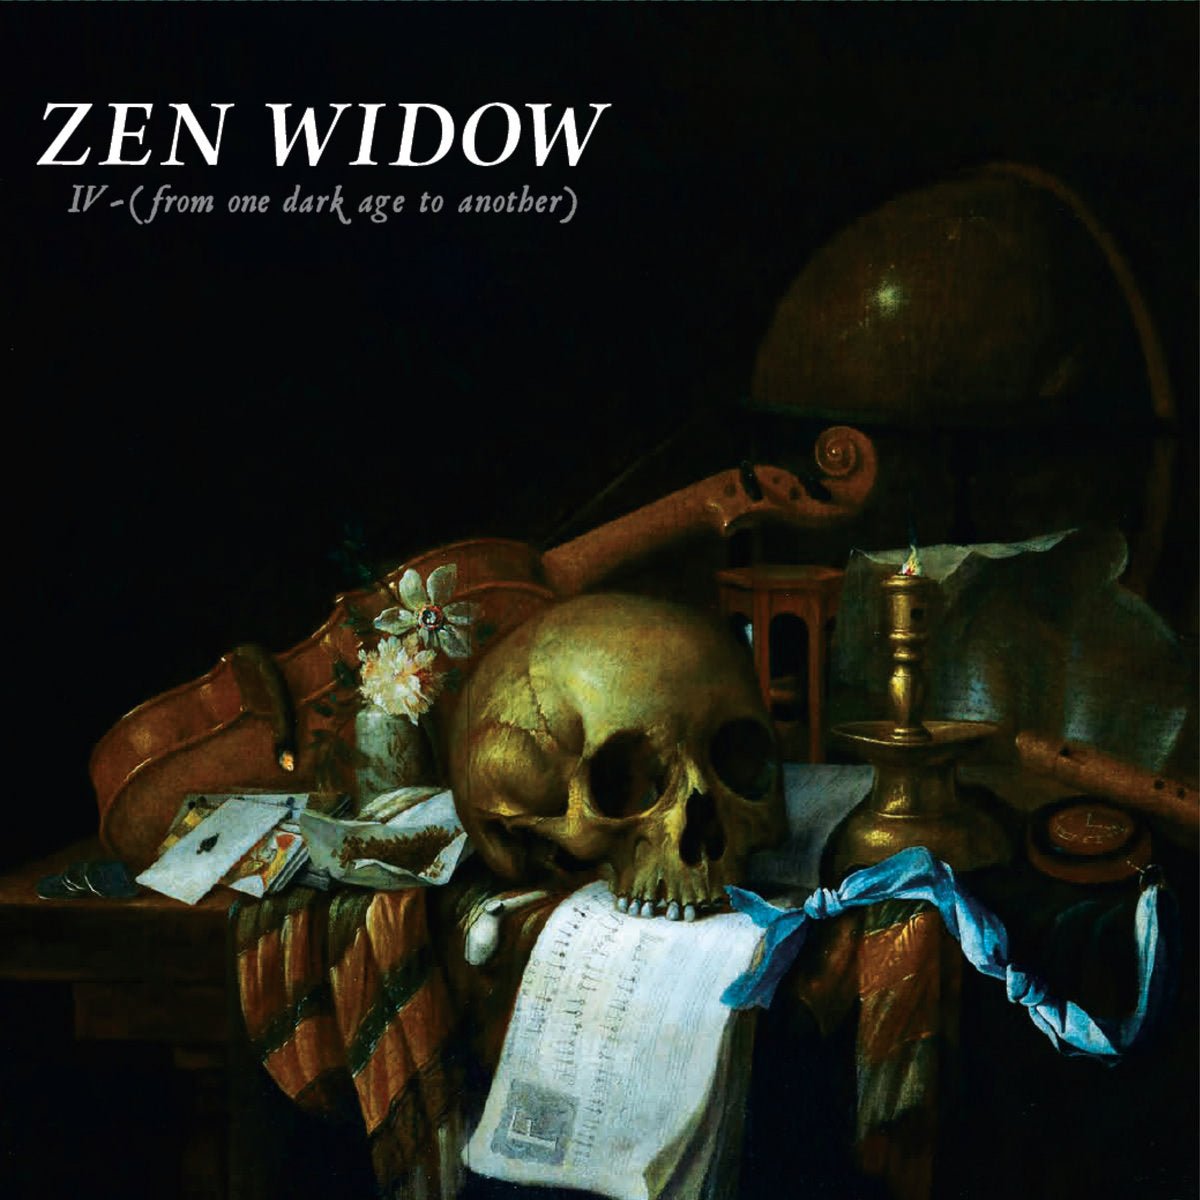 Zen Widow Delivers Sonic Thrills - AudioQuest